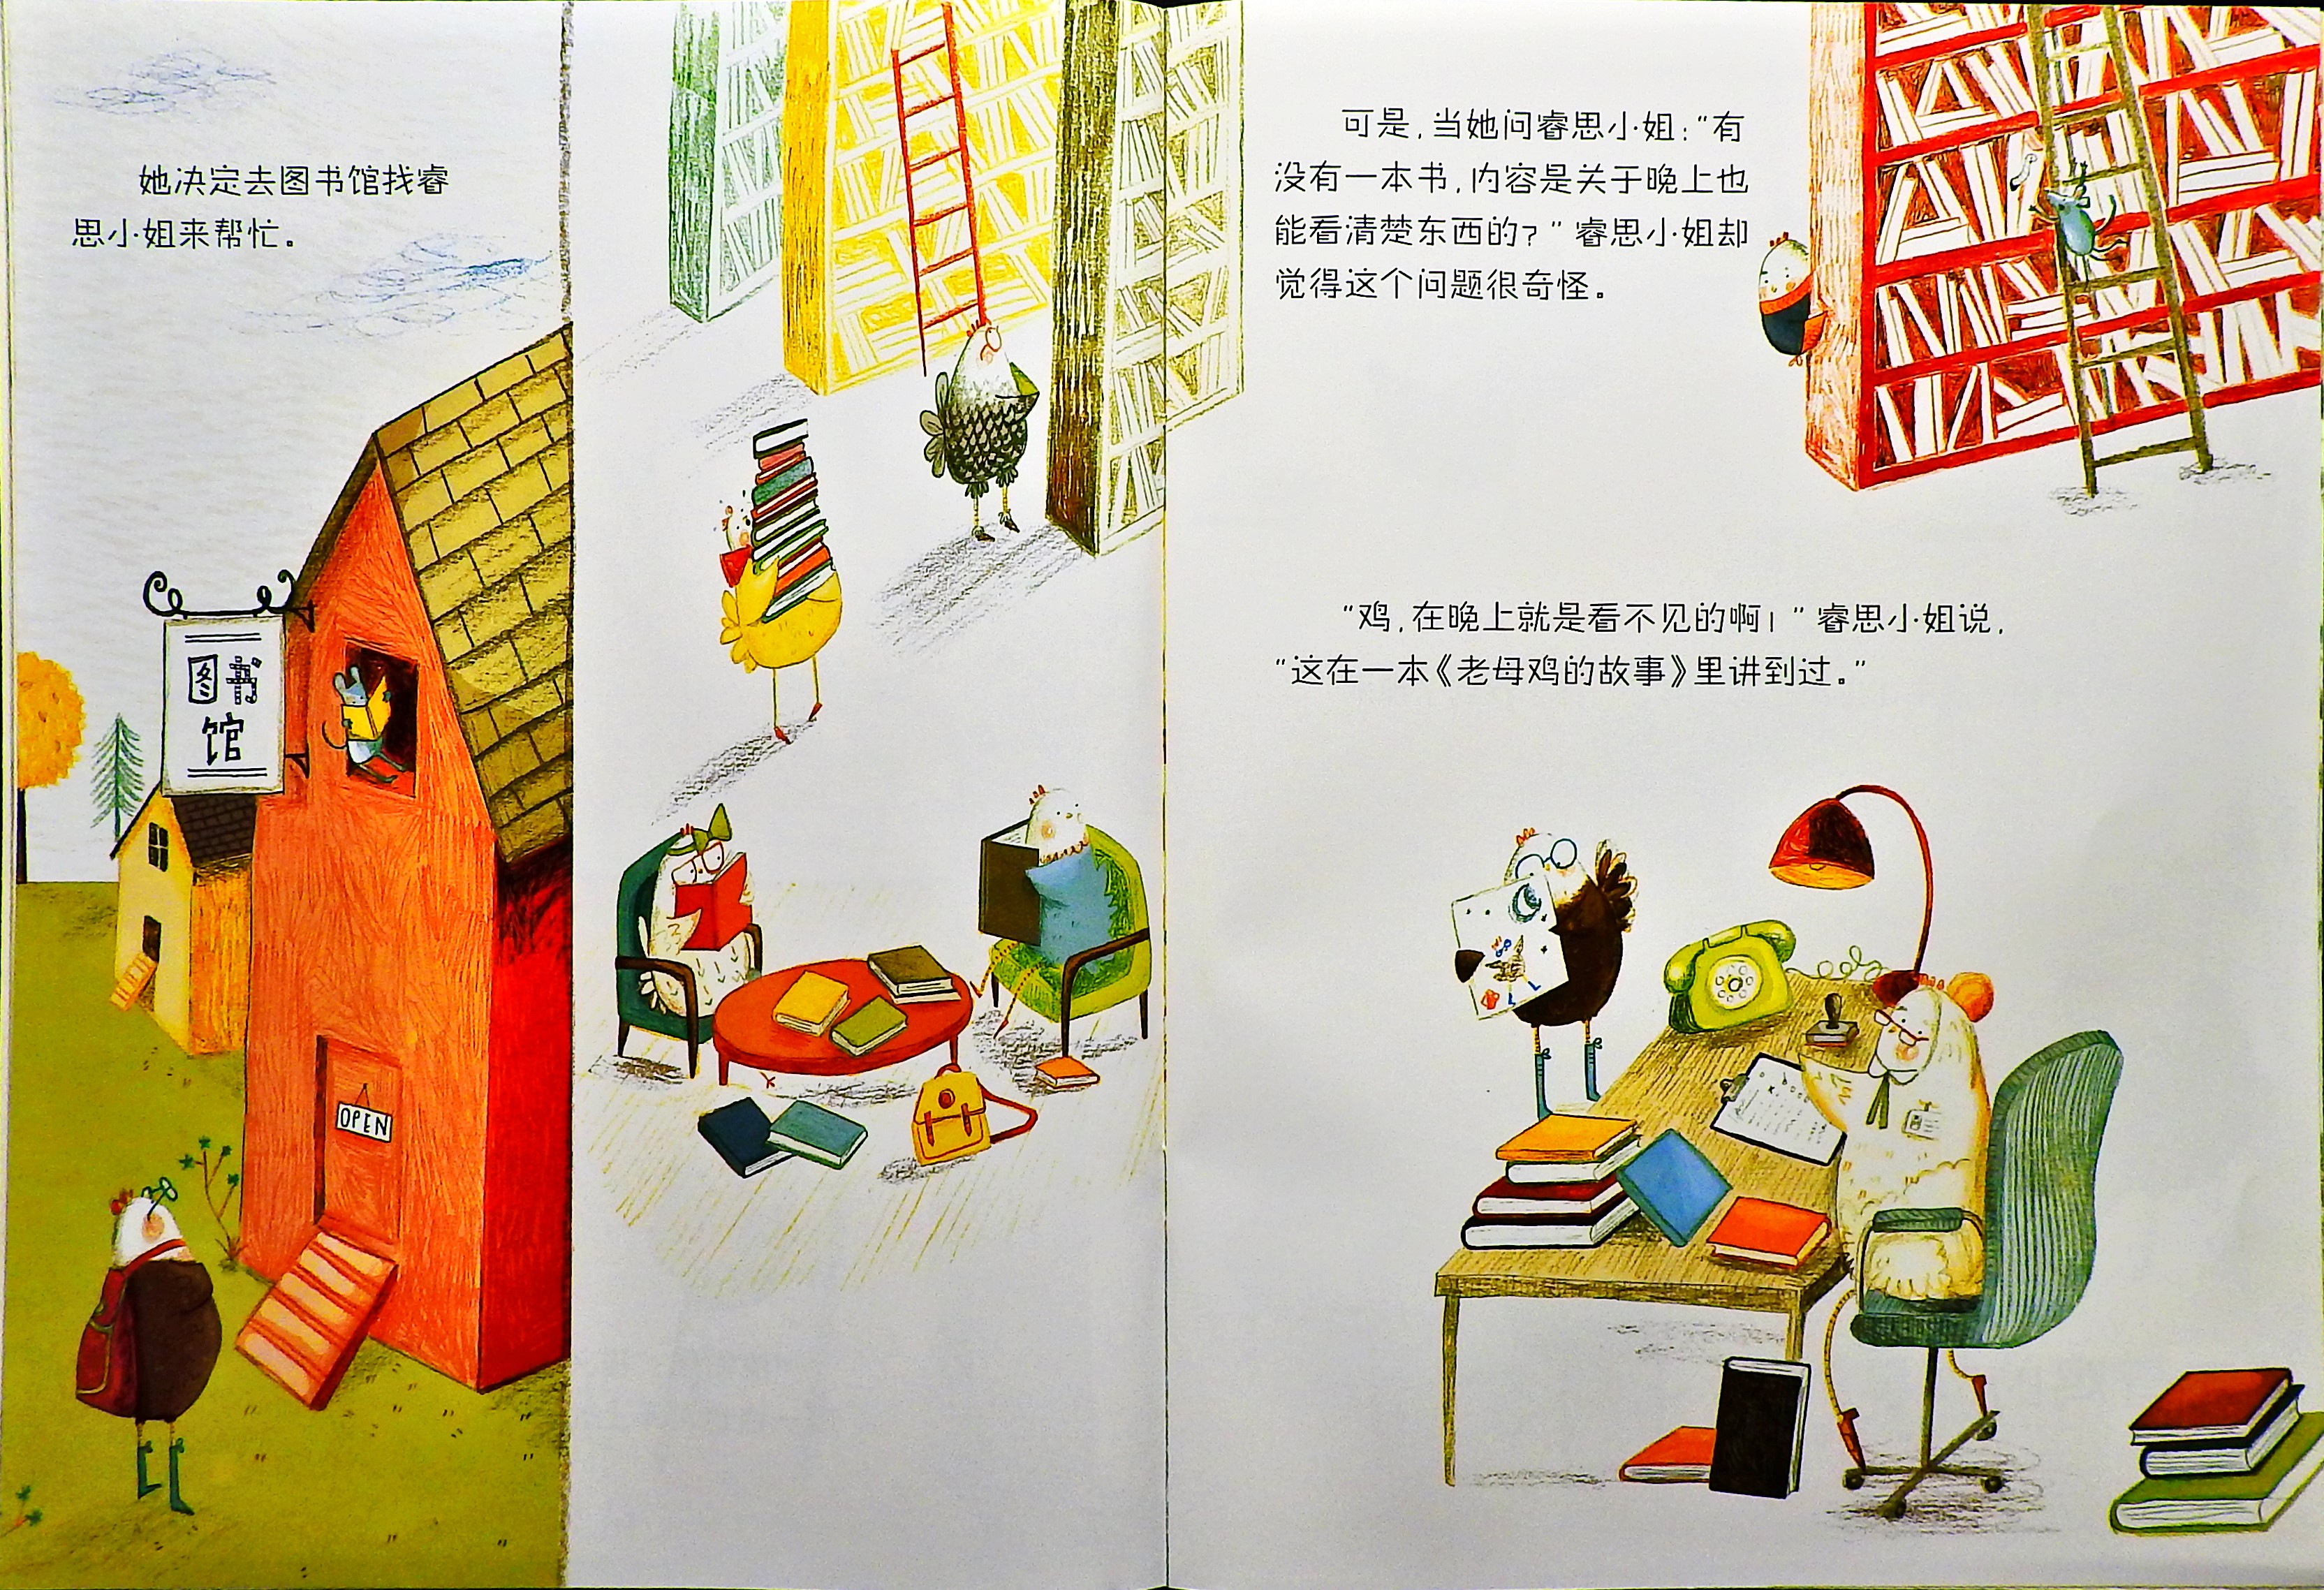 鸡在晚上看不见 (07),绘本,绘本故事,绘本阅读,故事书,童书,图画书,课外阅读